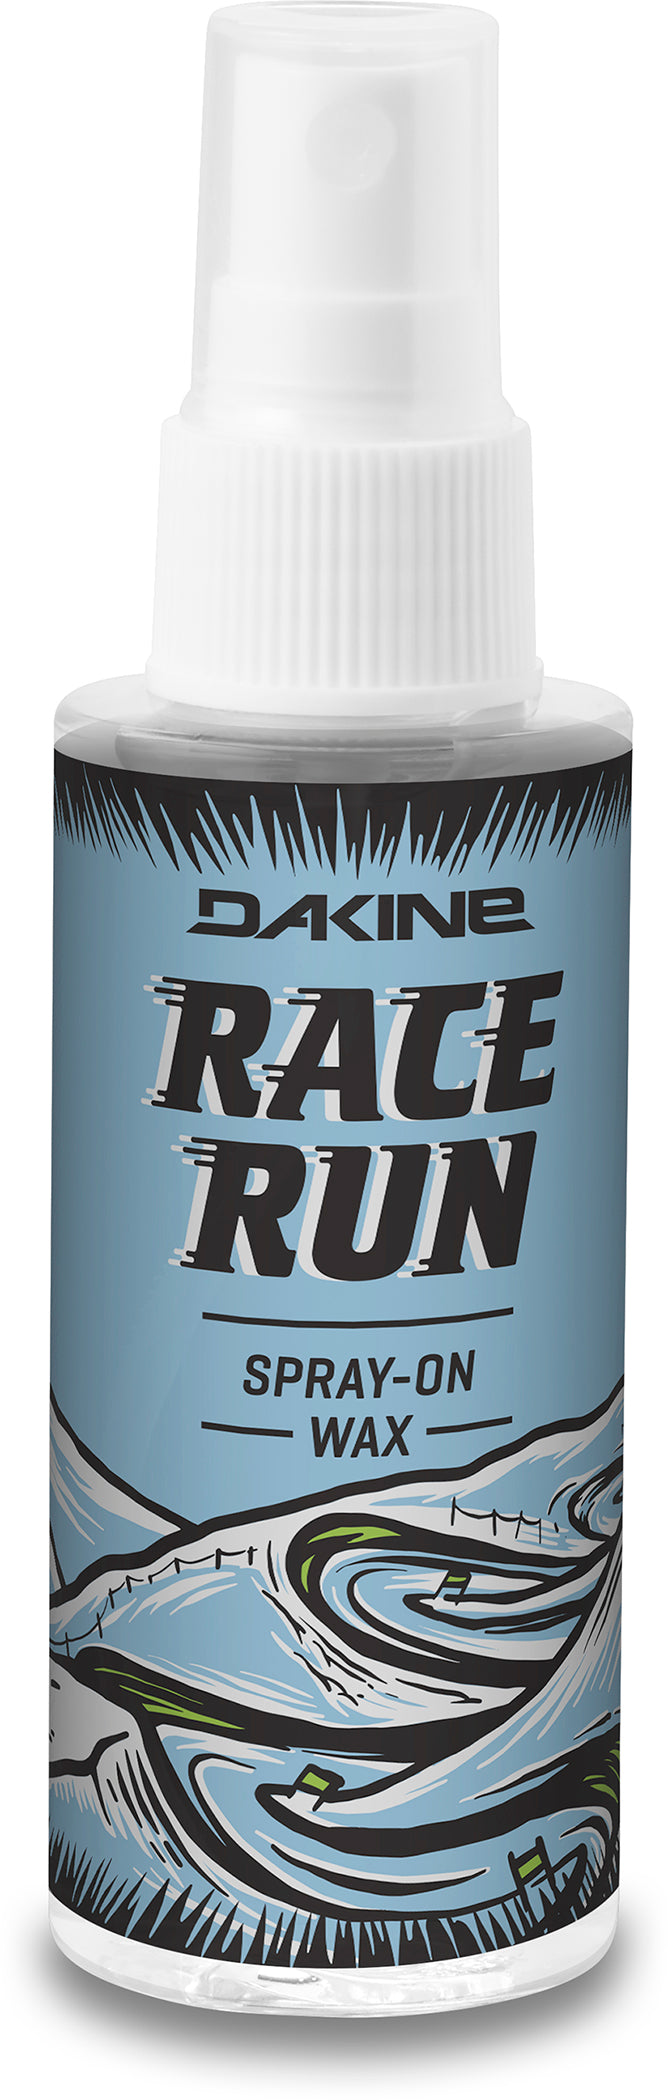 Dakine WAX (High Octane Rub On Wax, Race Run Spray On Wax, BC Skin Wax, Indy Hot Wax -All Temp & Nitrous All Temp Wax)